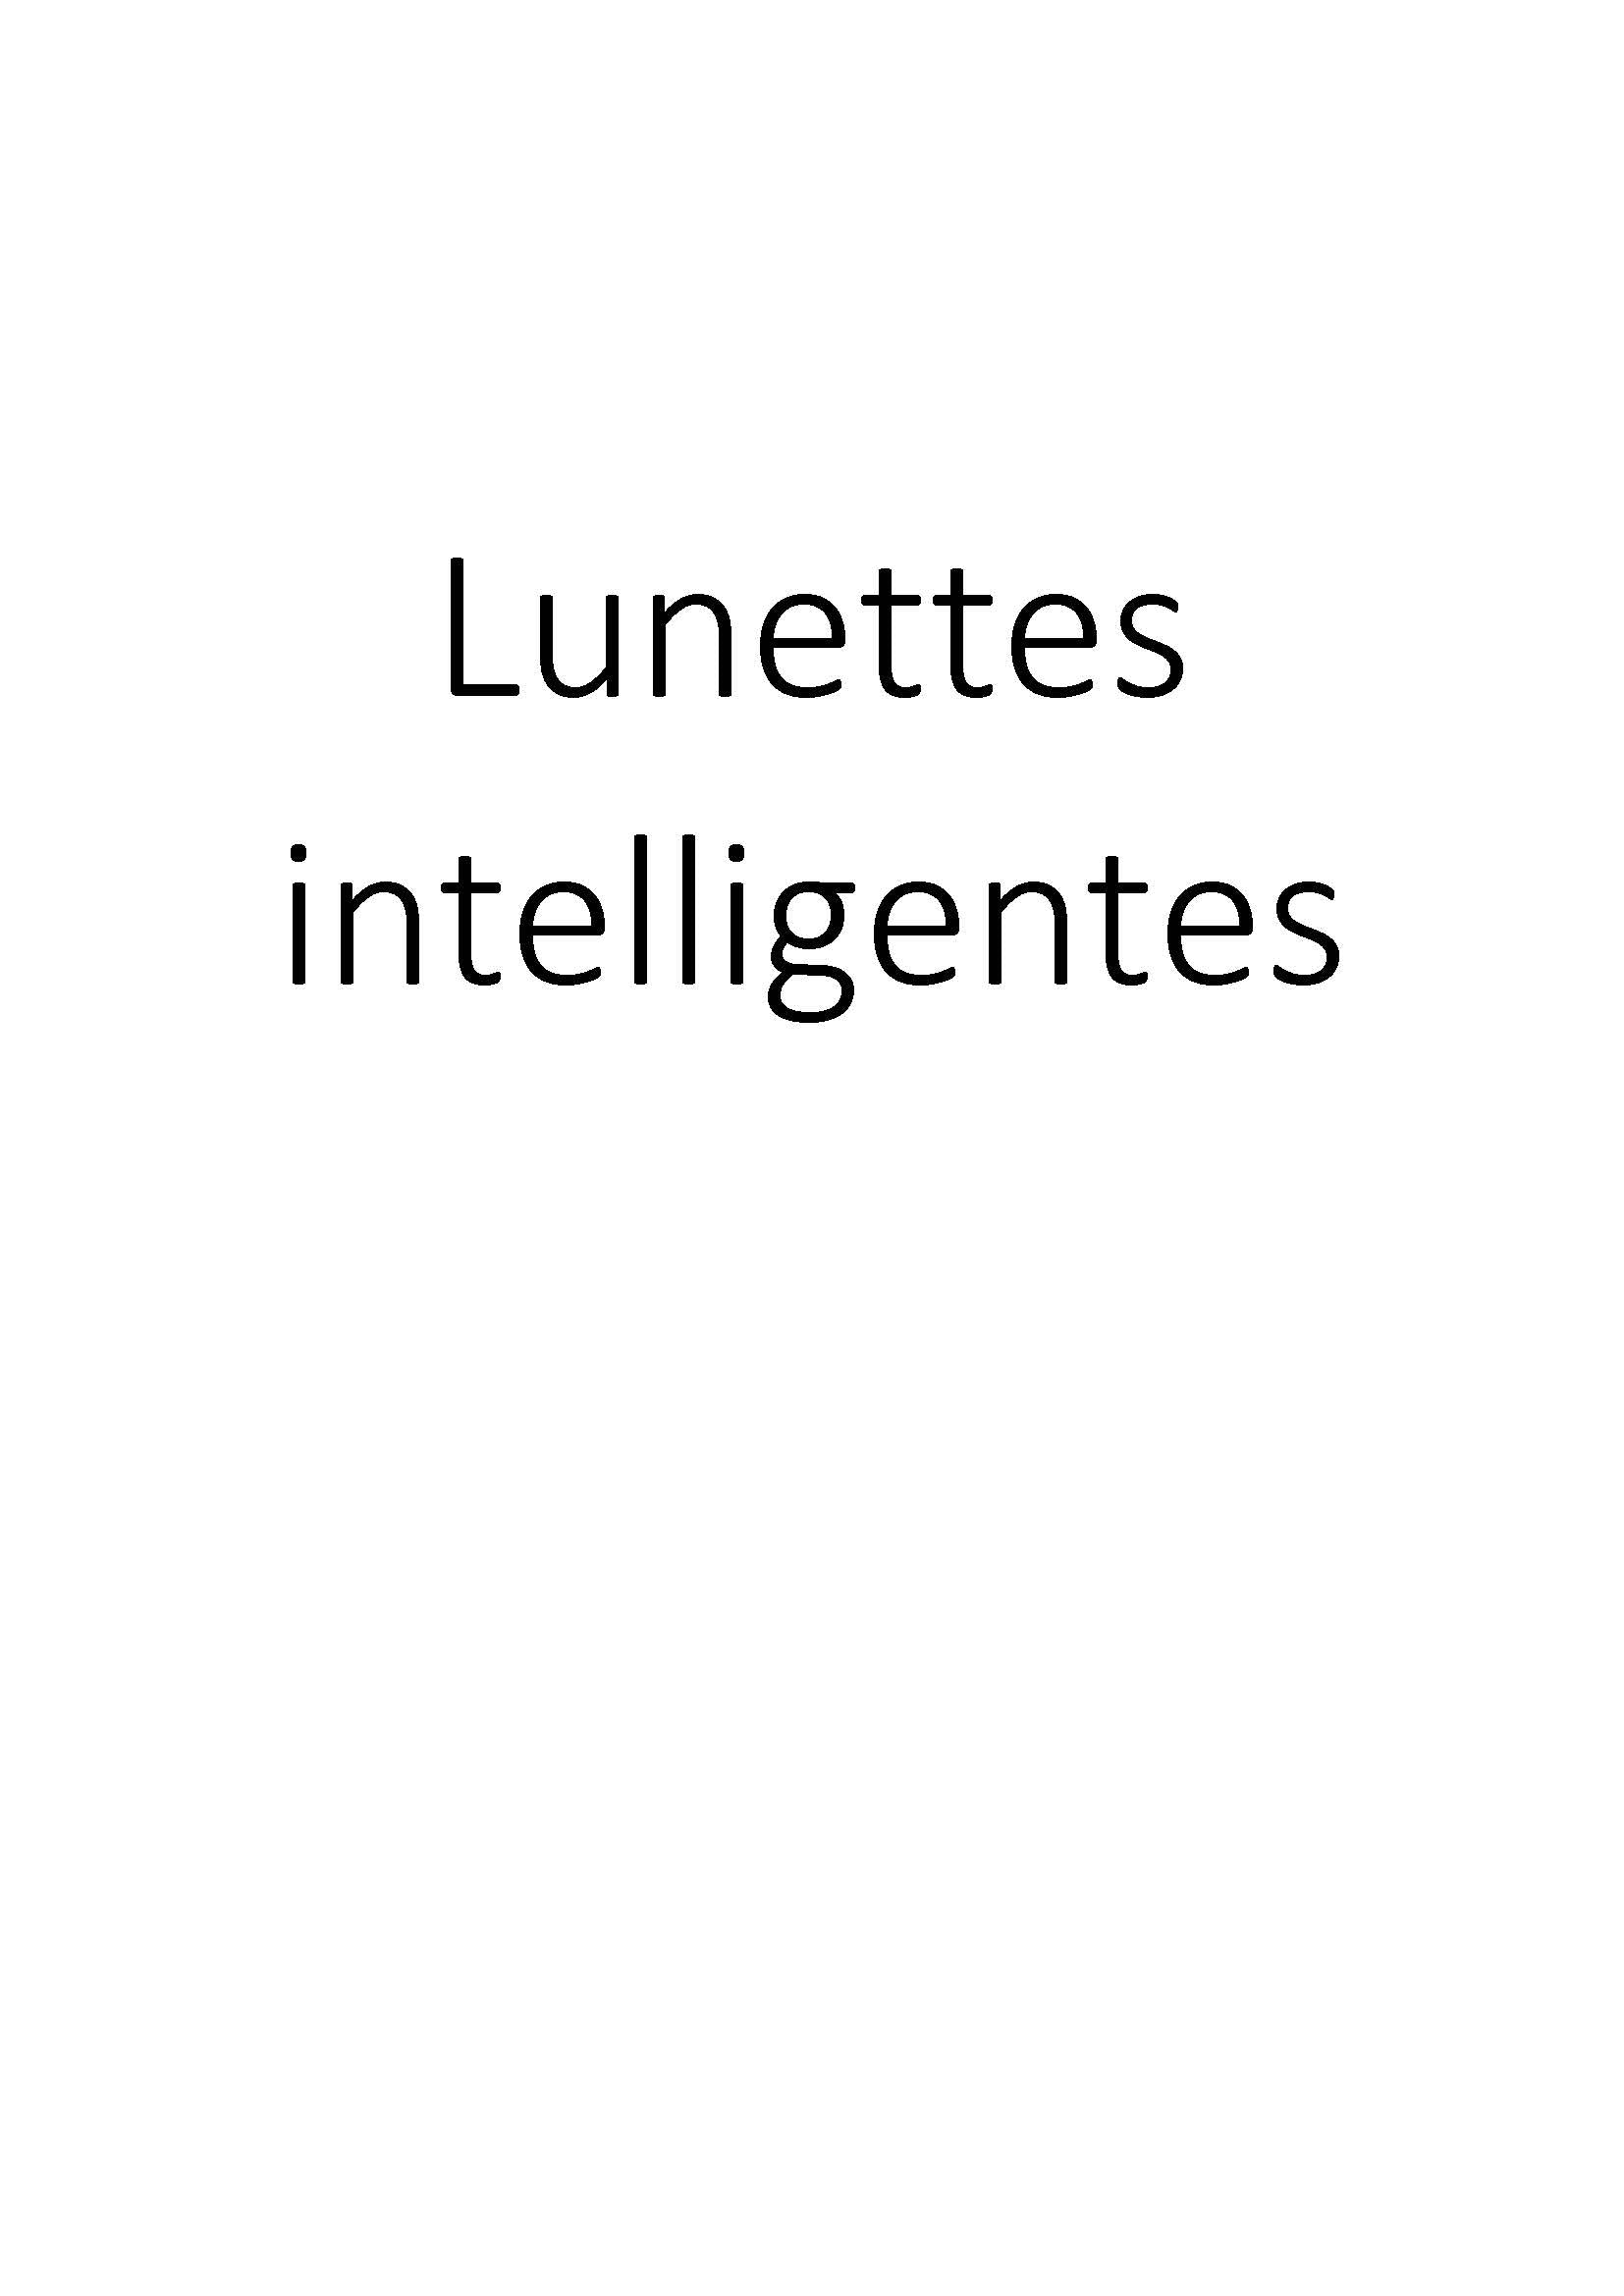 Lunettes intelligentes clicktofournisseur.com